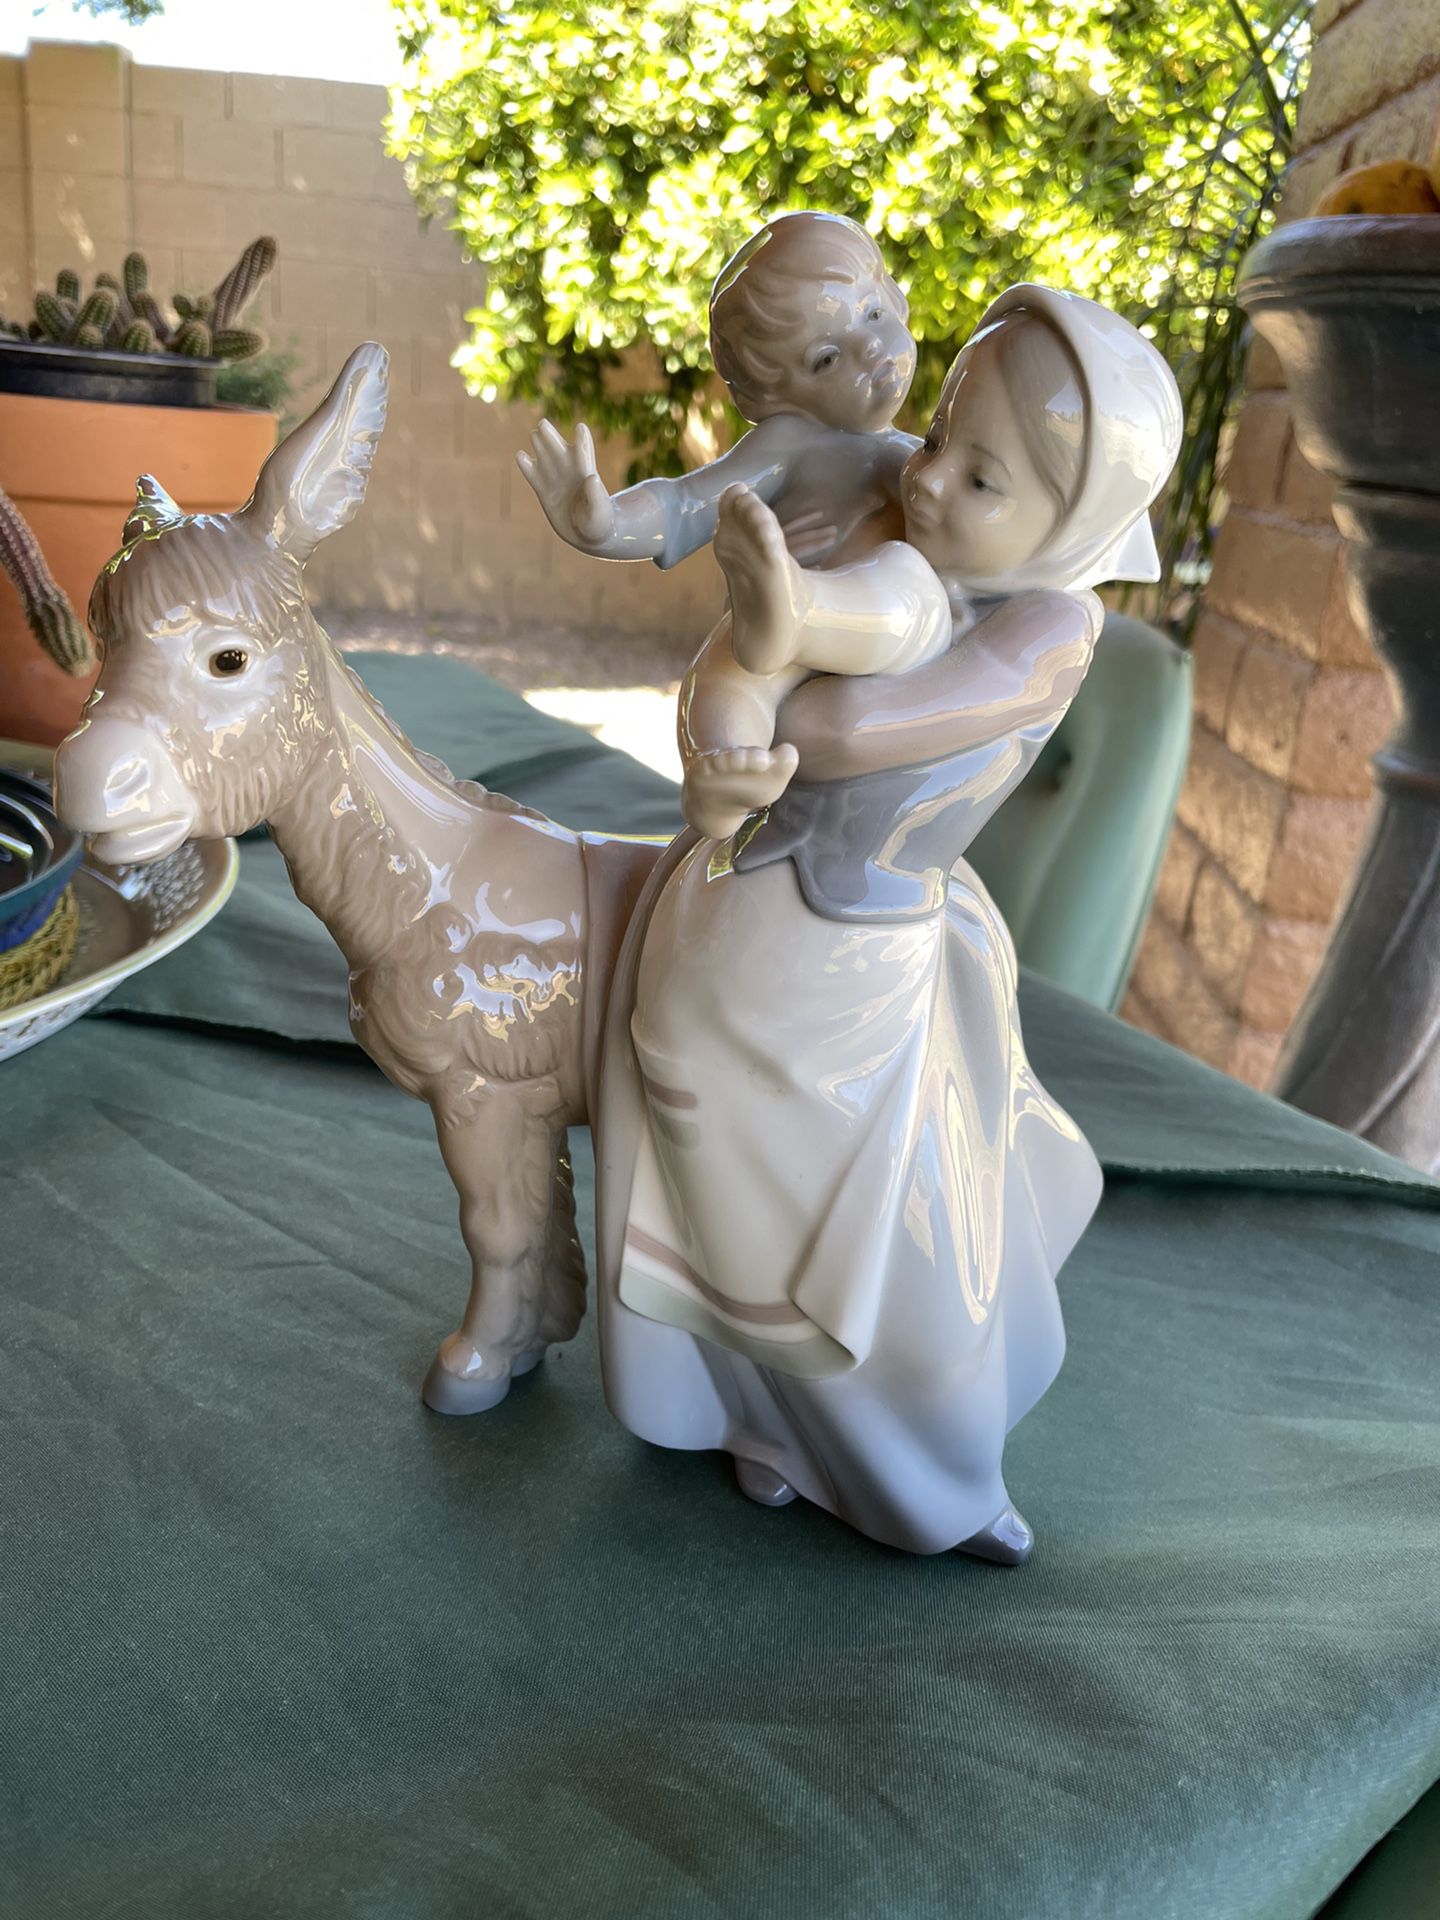 LLARDO porcelain Figurine - Large Figure “Donkey Ride”